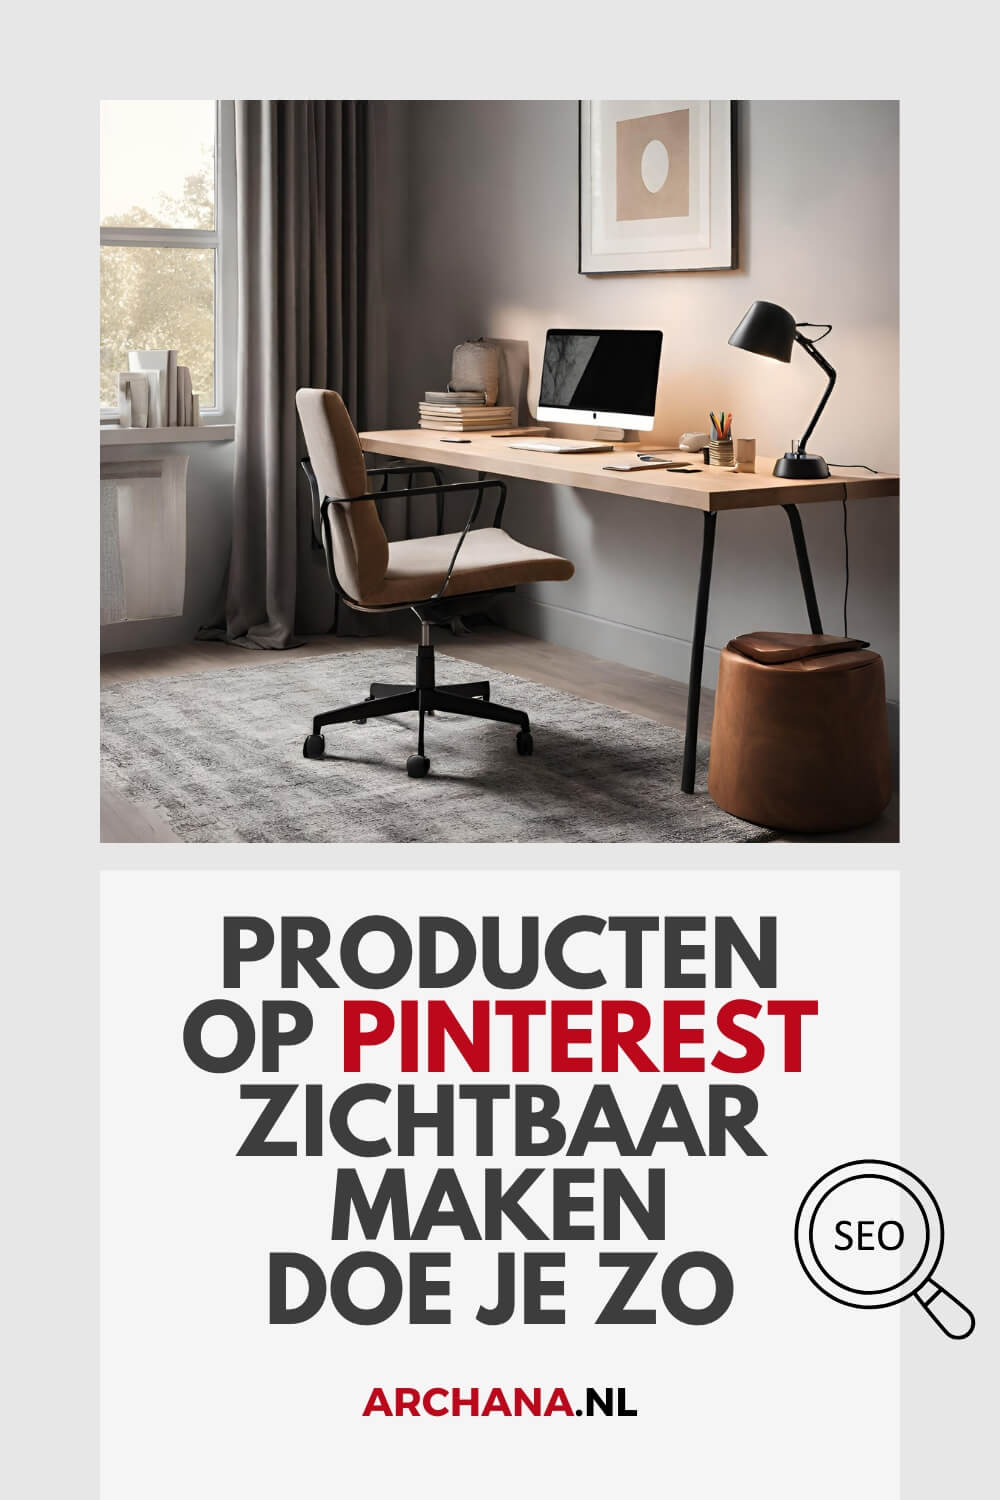 Producten op Pinterest zichtbaar maken doe je zo - Pinterest voor je bedrijf - ARCHANA.NL